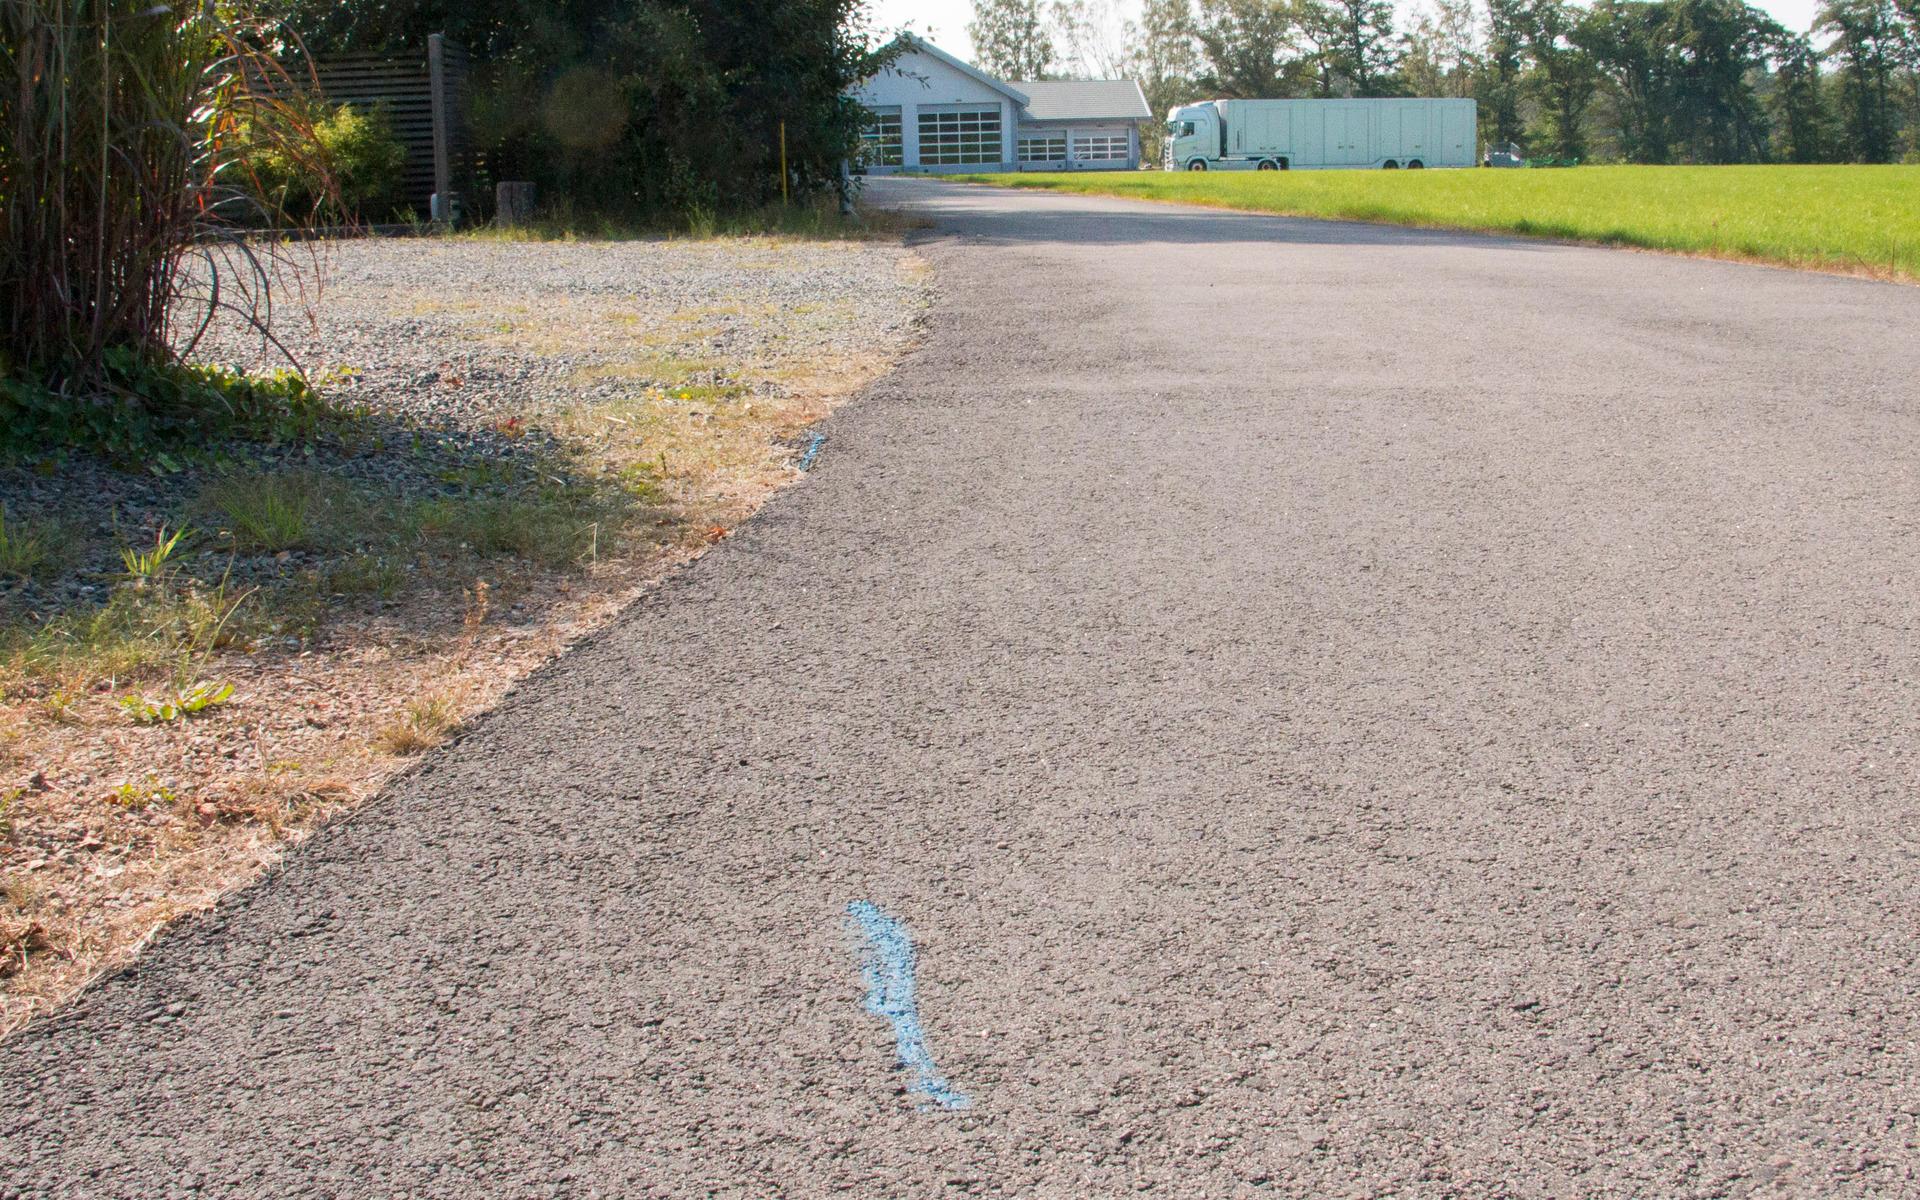 Asfalt har lagts i ett väghörn. Därmed ligger en del av asfalten i naturreservatet. Den blå markeringen visar gränsen.